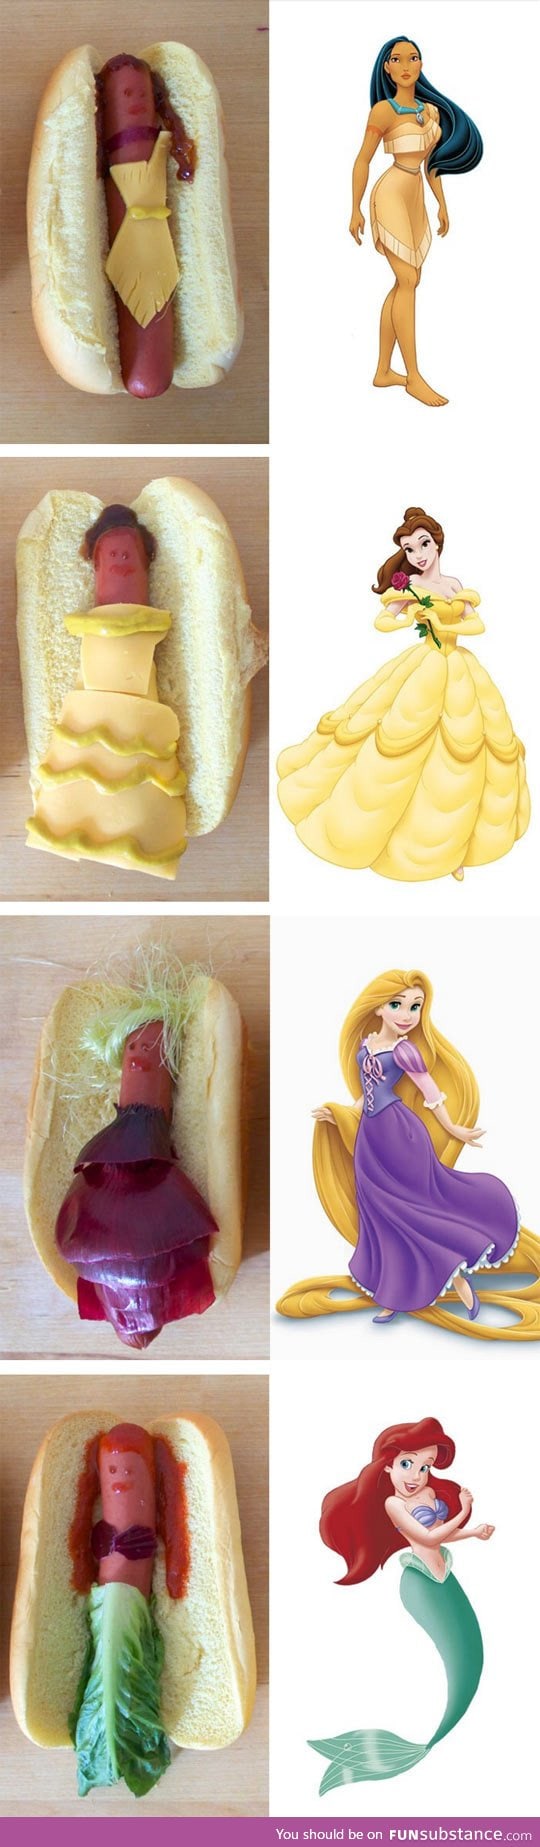 Disney princesses as hot dogs